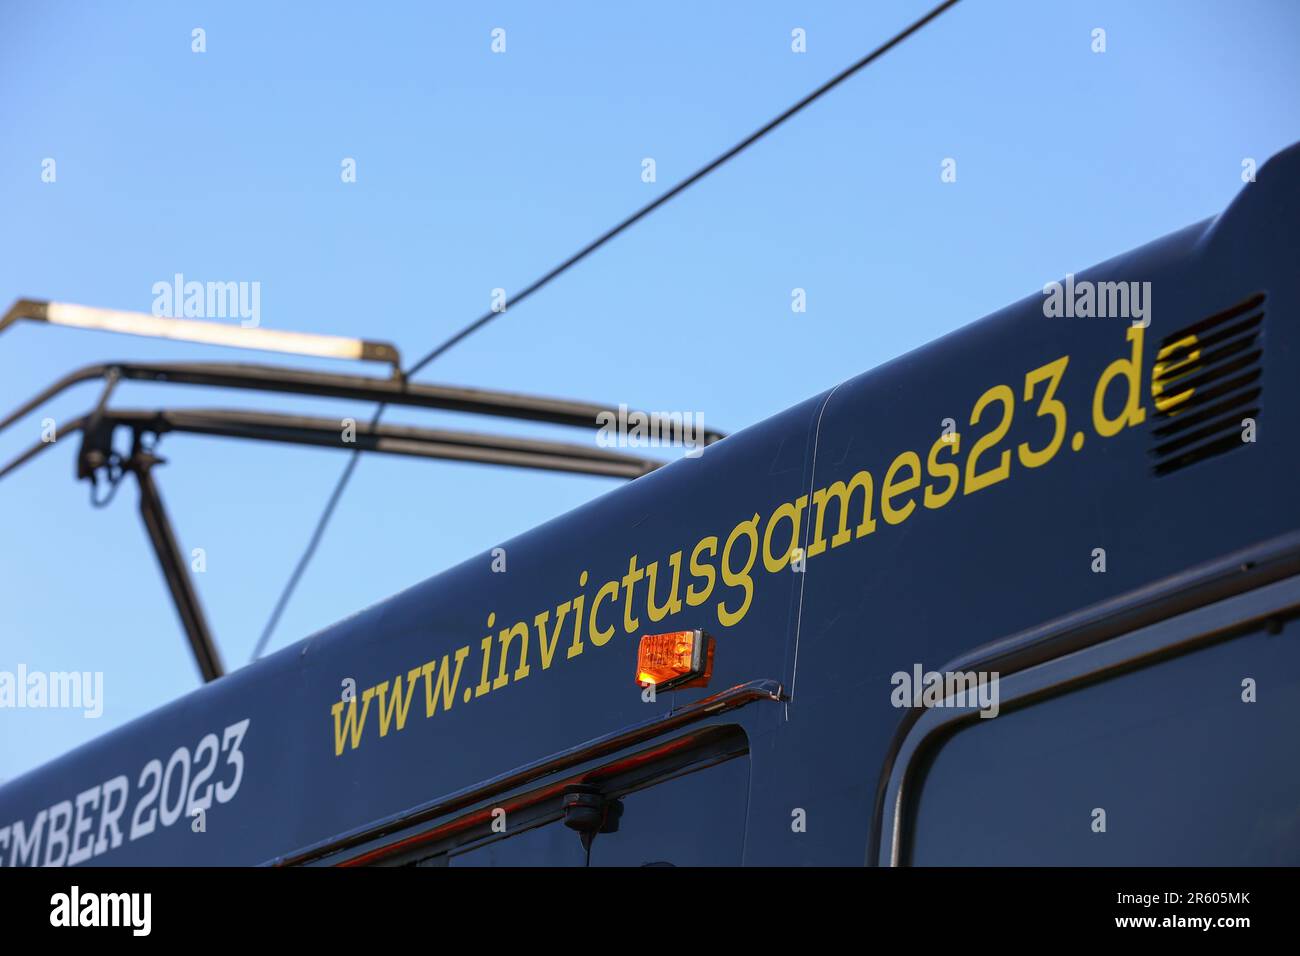 Düsseldorf, Allemagne, 06.06.2023. Le réseau de transport de Düsseldorf Rheinbahn présente un tramway de marque Invictus Games 2023. Les jeux ont lieu dans la ville en septembre 2023. Credit: News NRW / Alamy Live News Banque D'Images